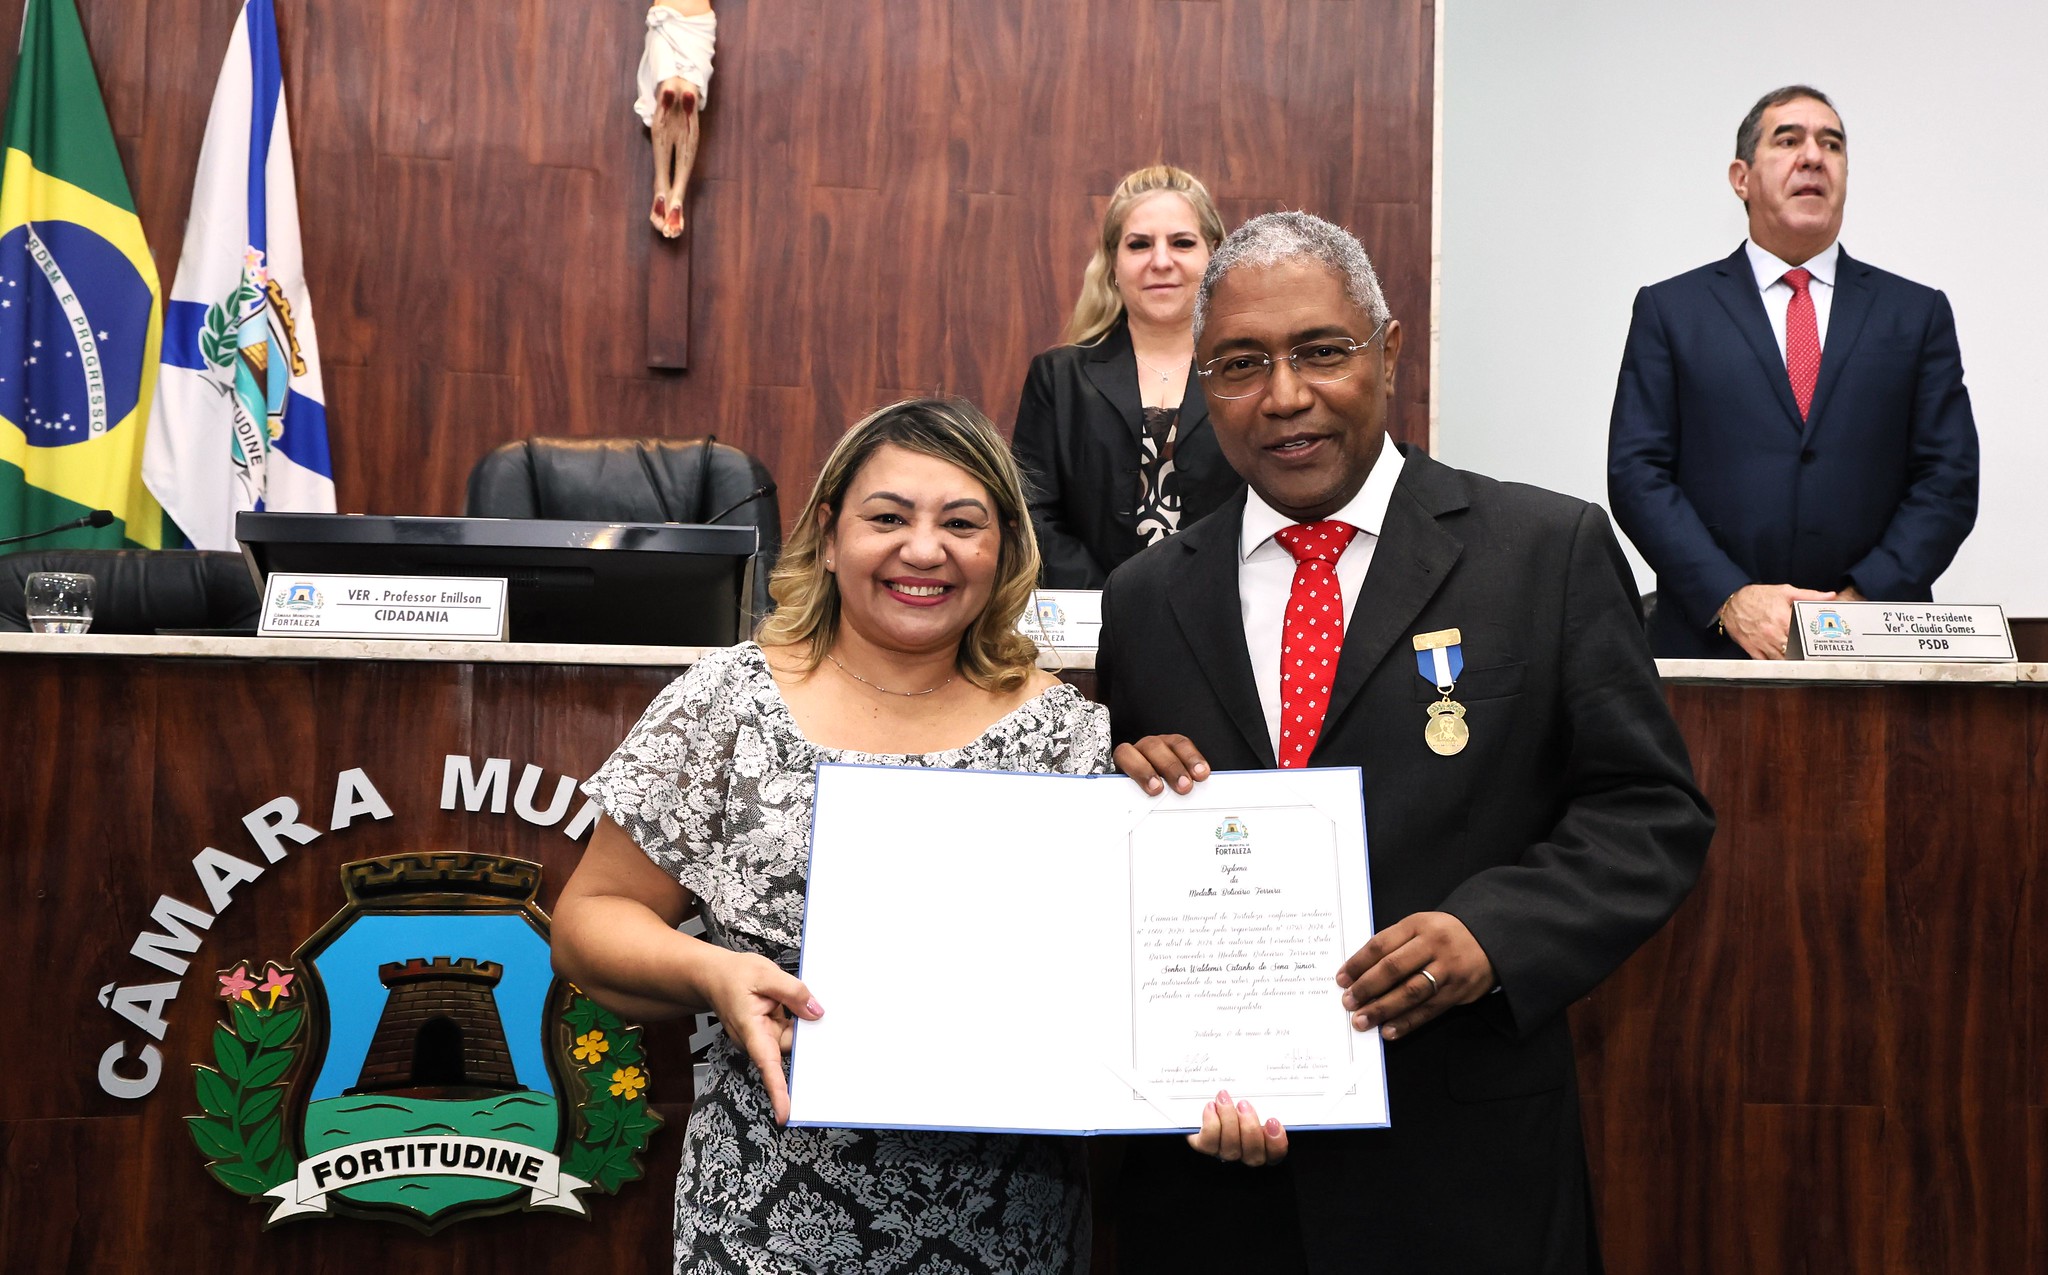 Câmara Municipal de Fortaleza homenageia Waldemir Catanho com a Medalha Boticário Ferreira